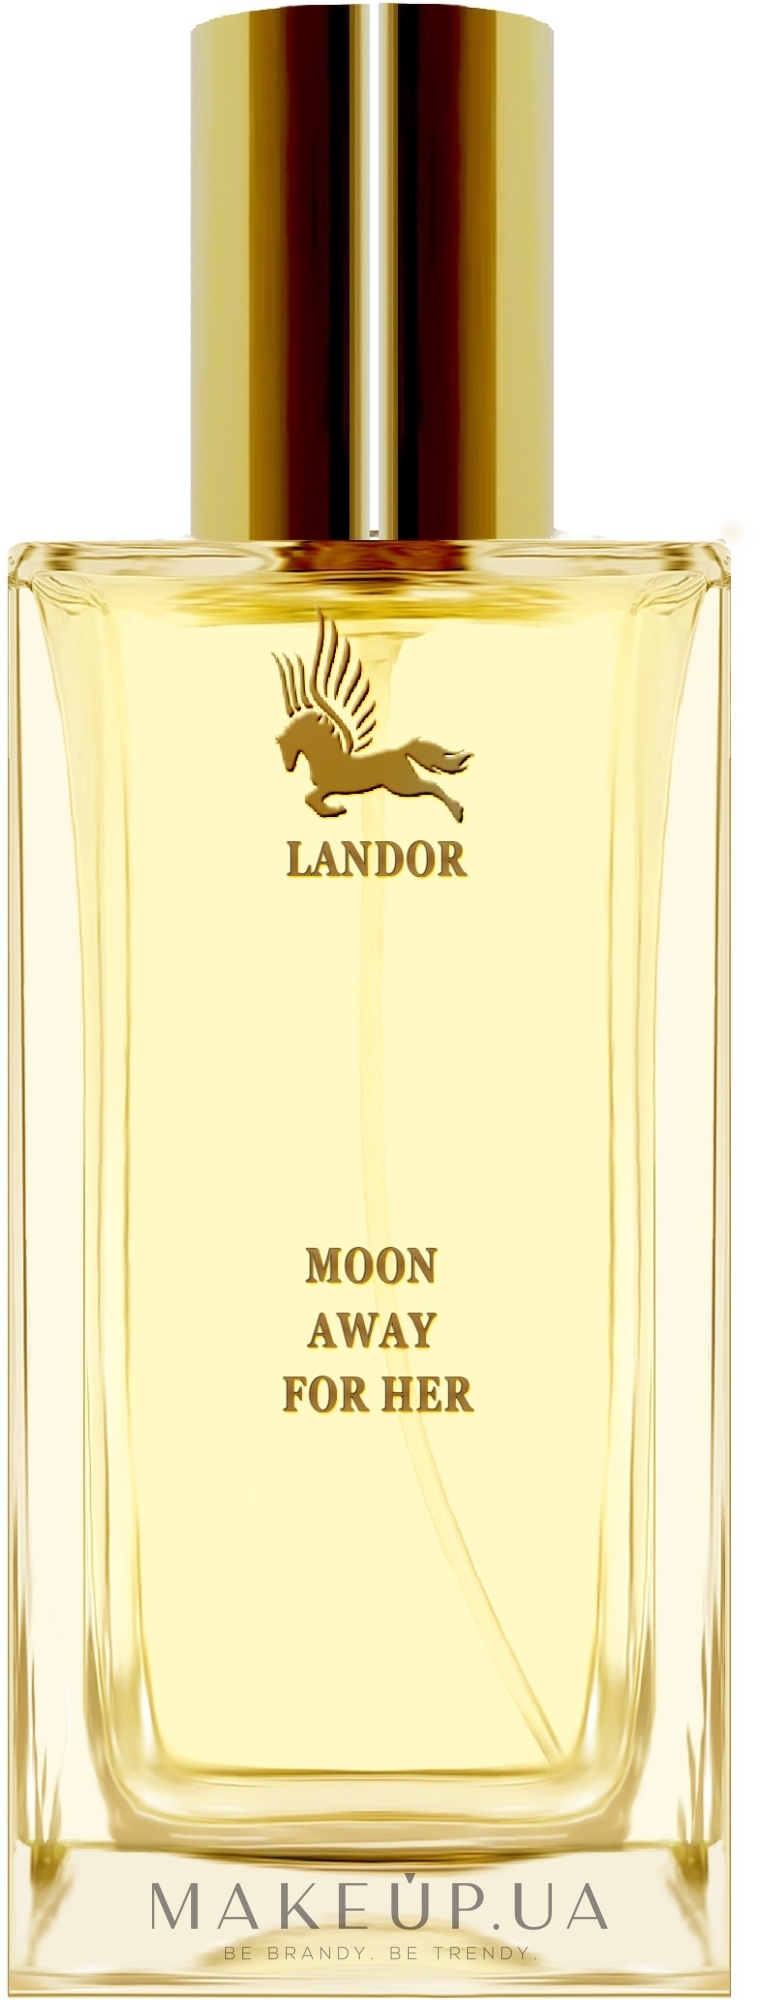 Landor Moon Away For Her